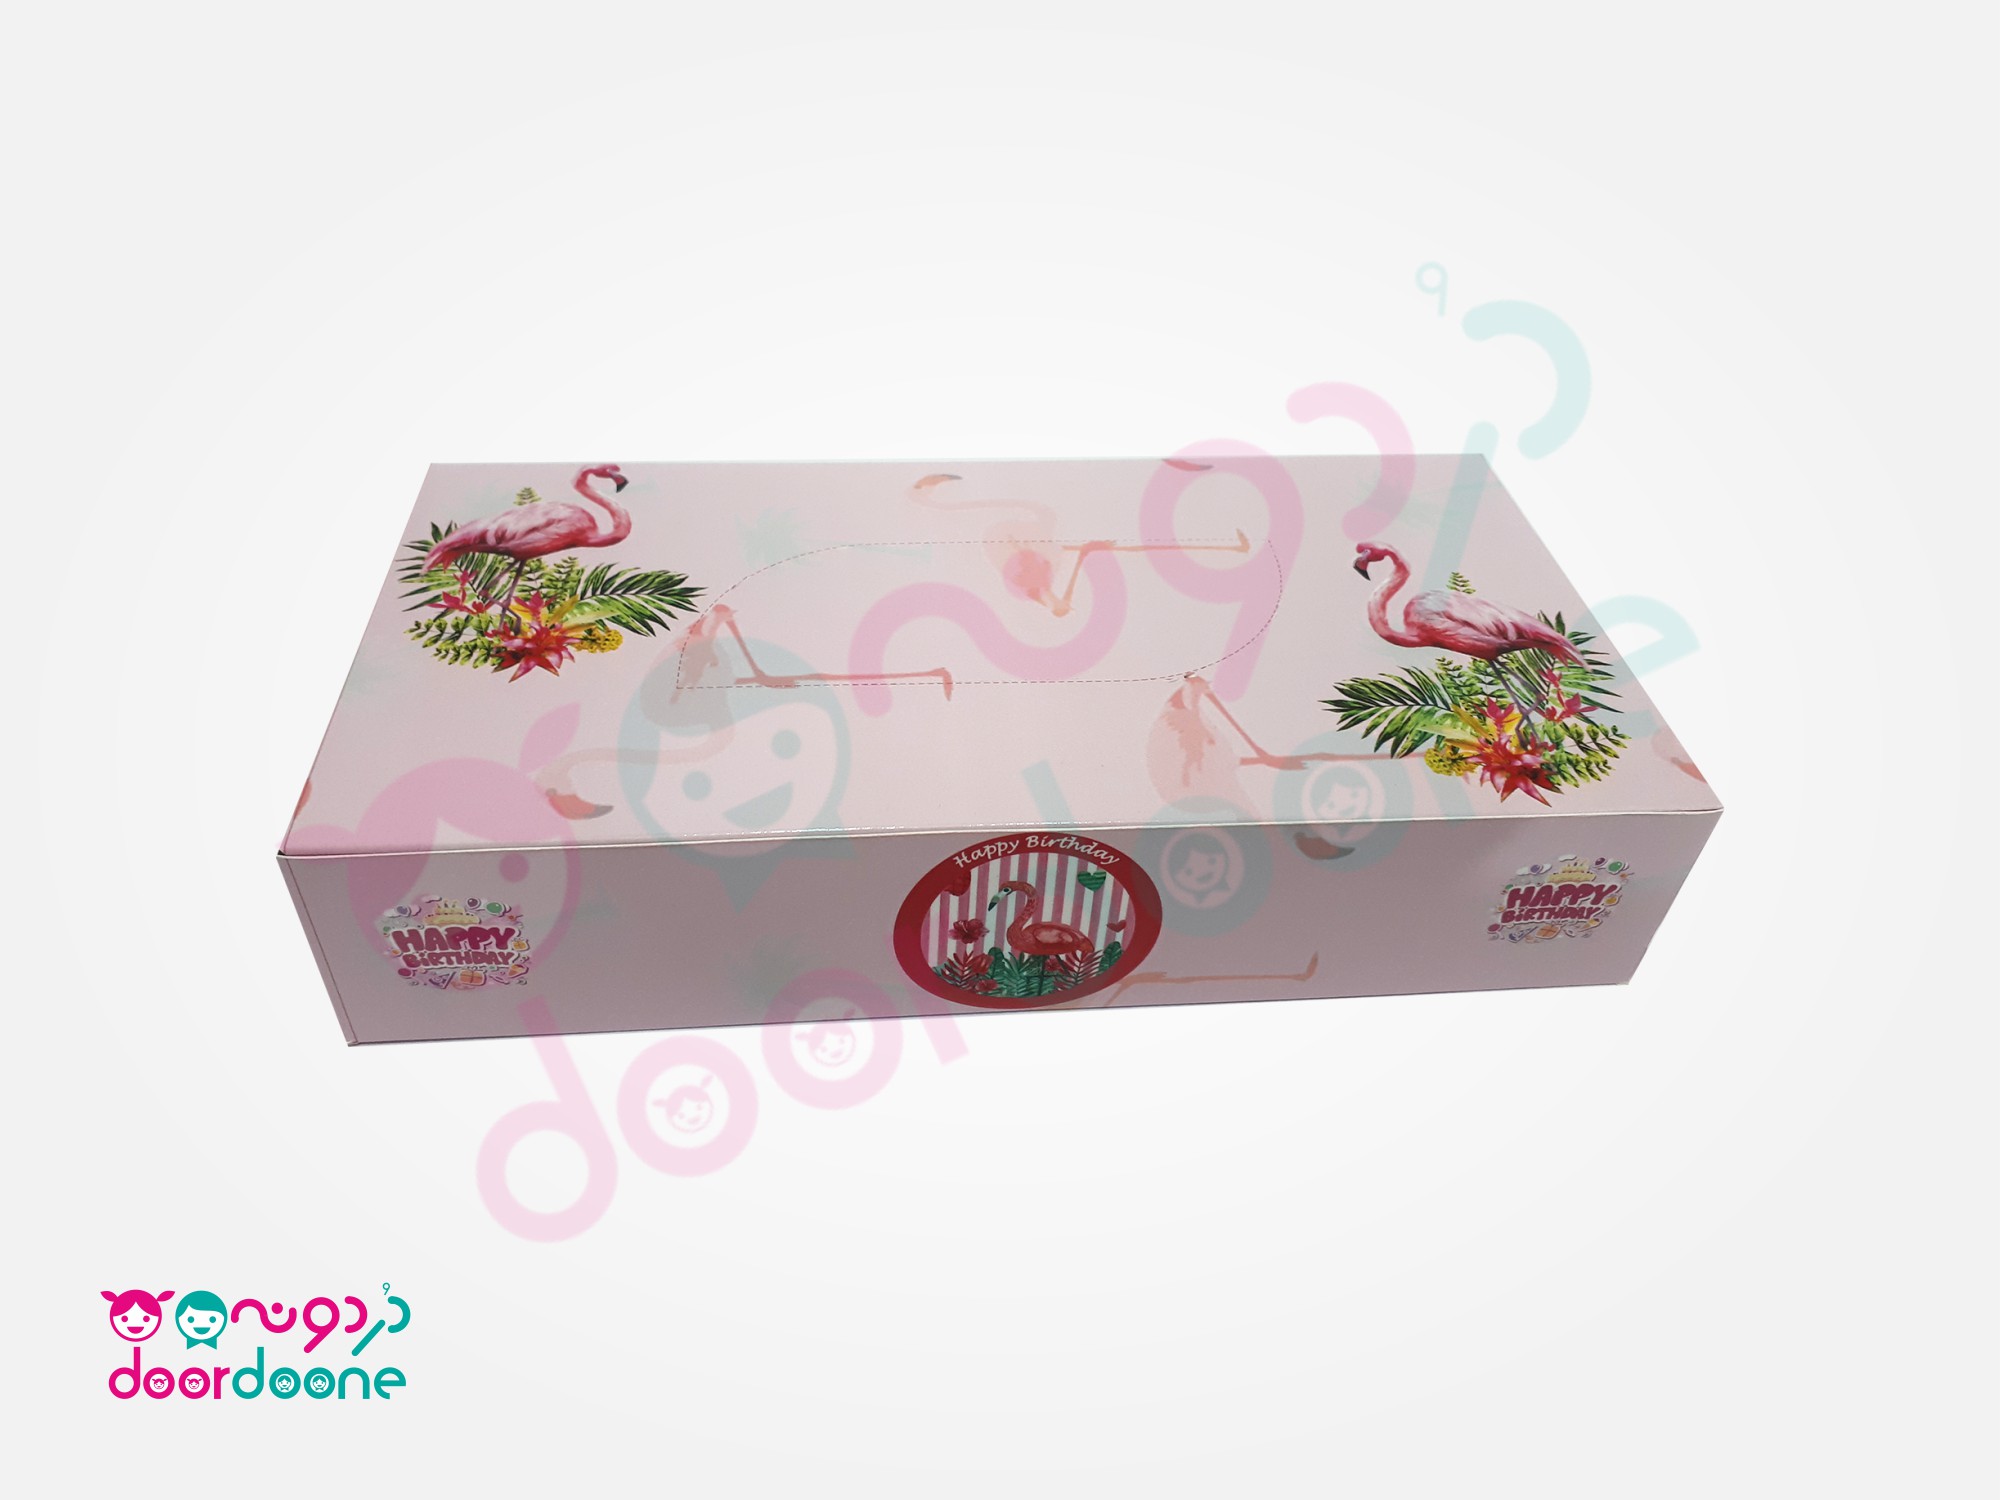 جعبه دستمال کاغذی تم فلامینگو (flamingo)